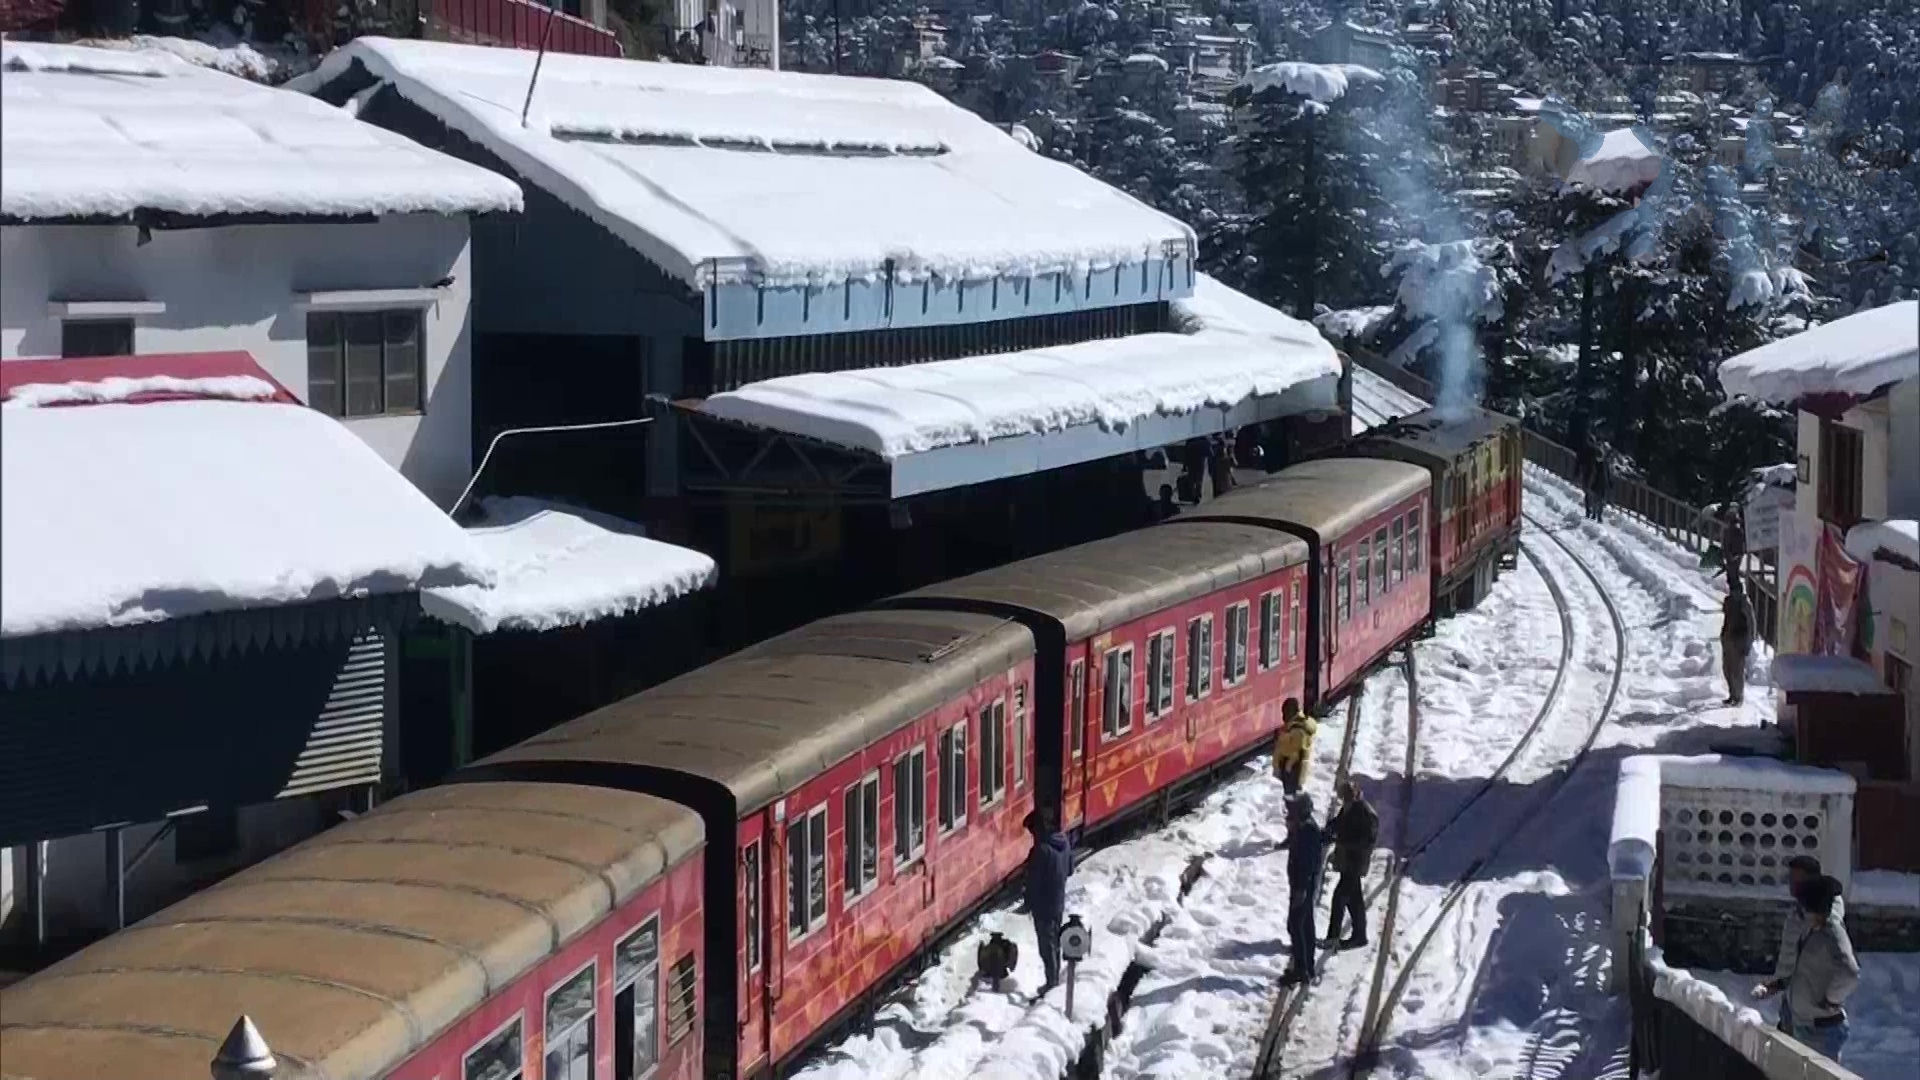 Heritage trains